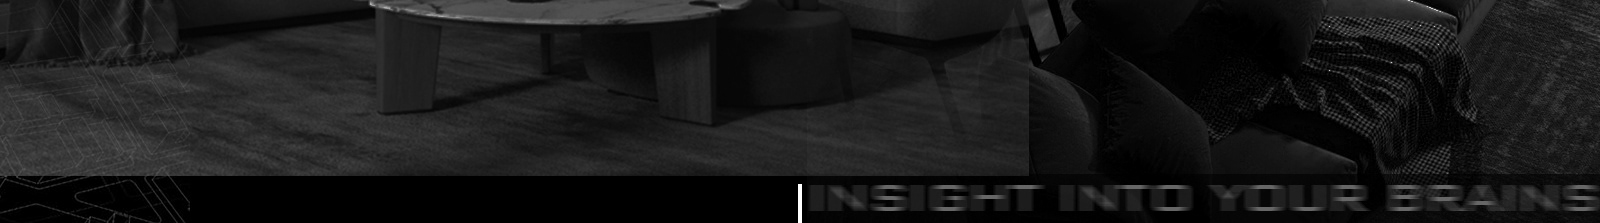 Insite Studio's profile banner